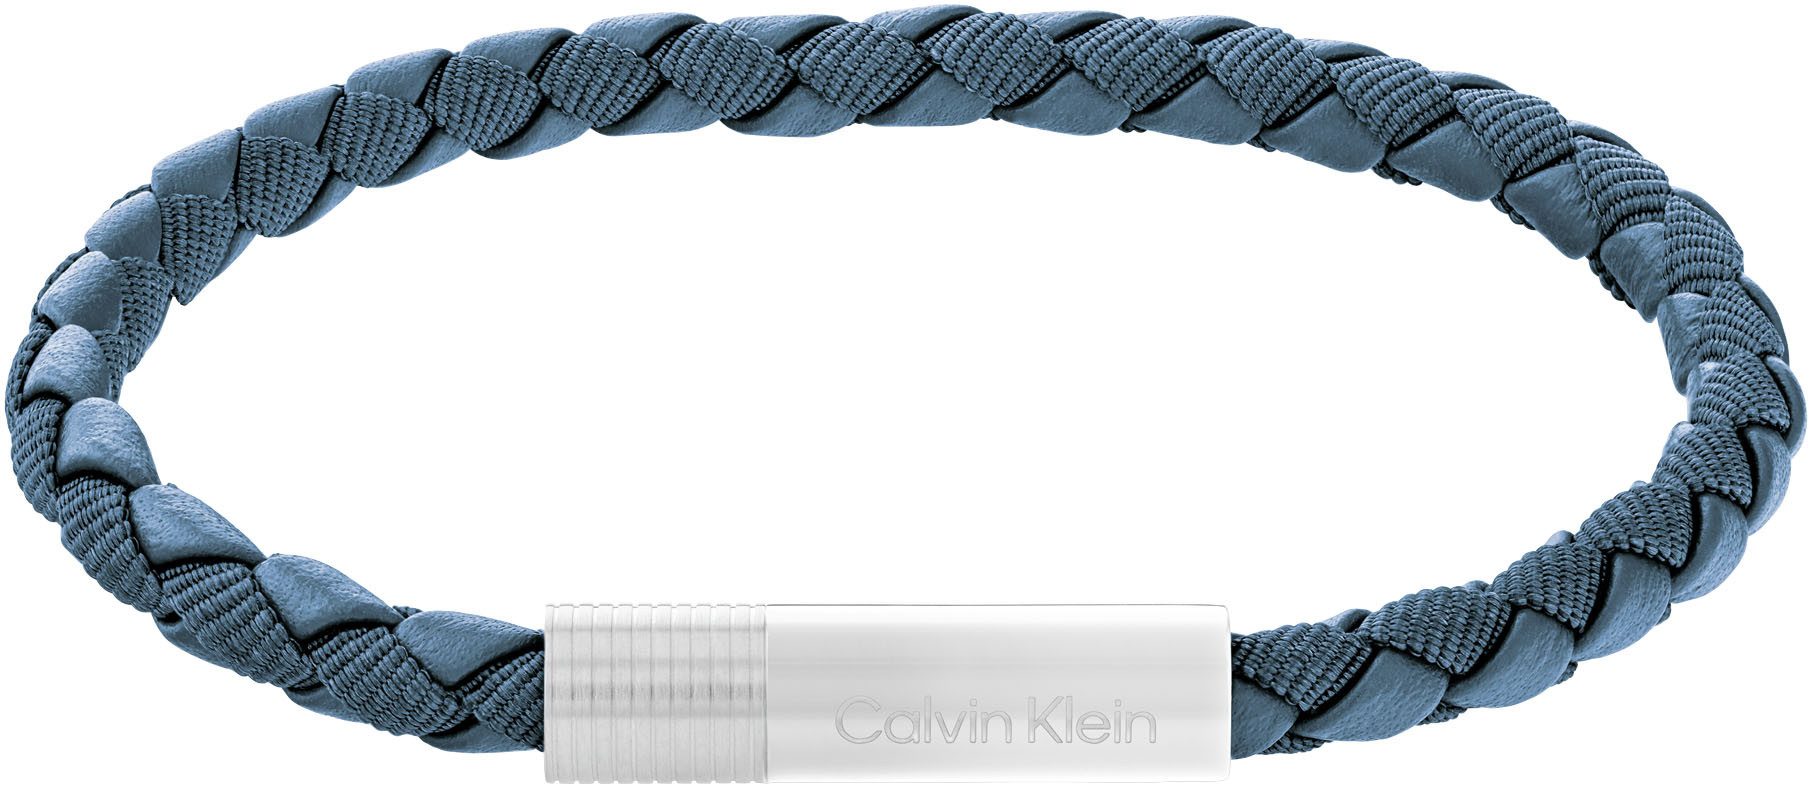 Calvin Klein Armband VELOCITY, 35100025, 35100026